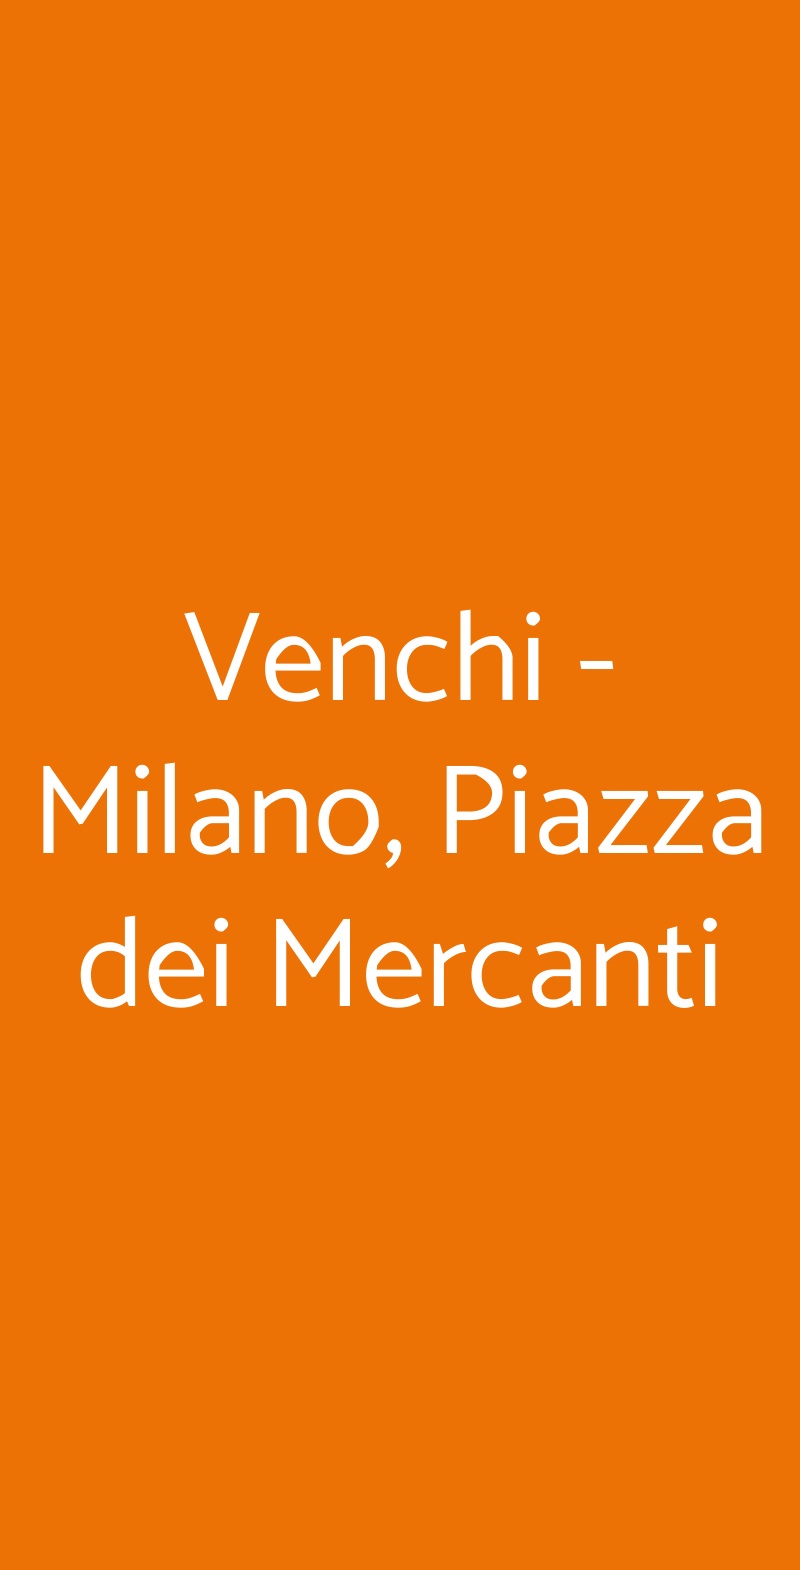 Venchi - Milano, Piazza dei Mercanti Milano menù 1 pagina